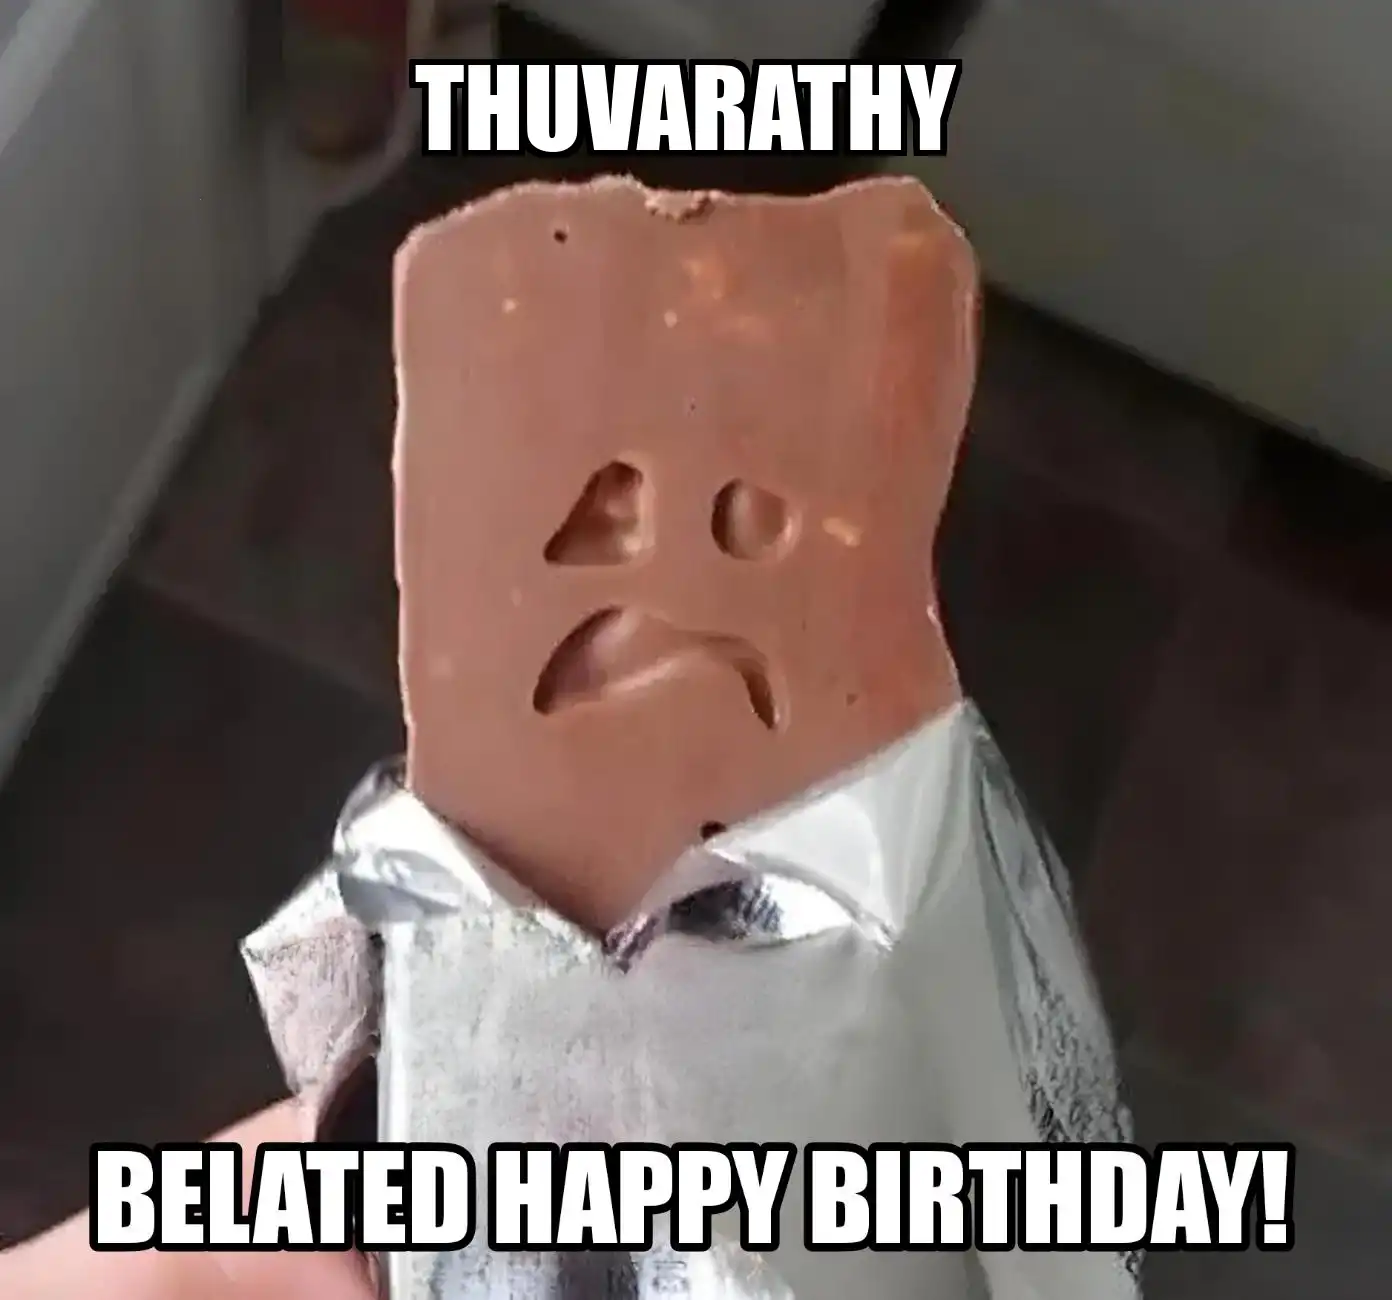 Happy Birthday Thuvarathy Belated Happy Birthday Meme